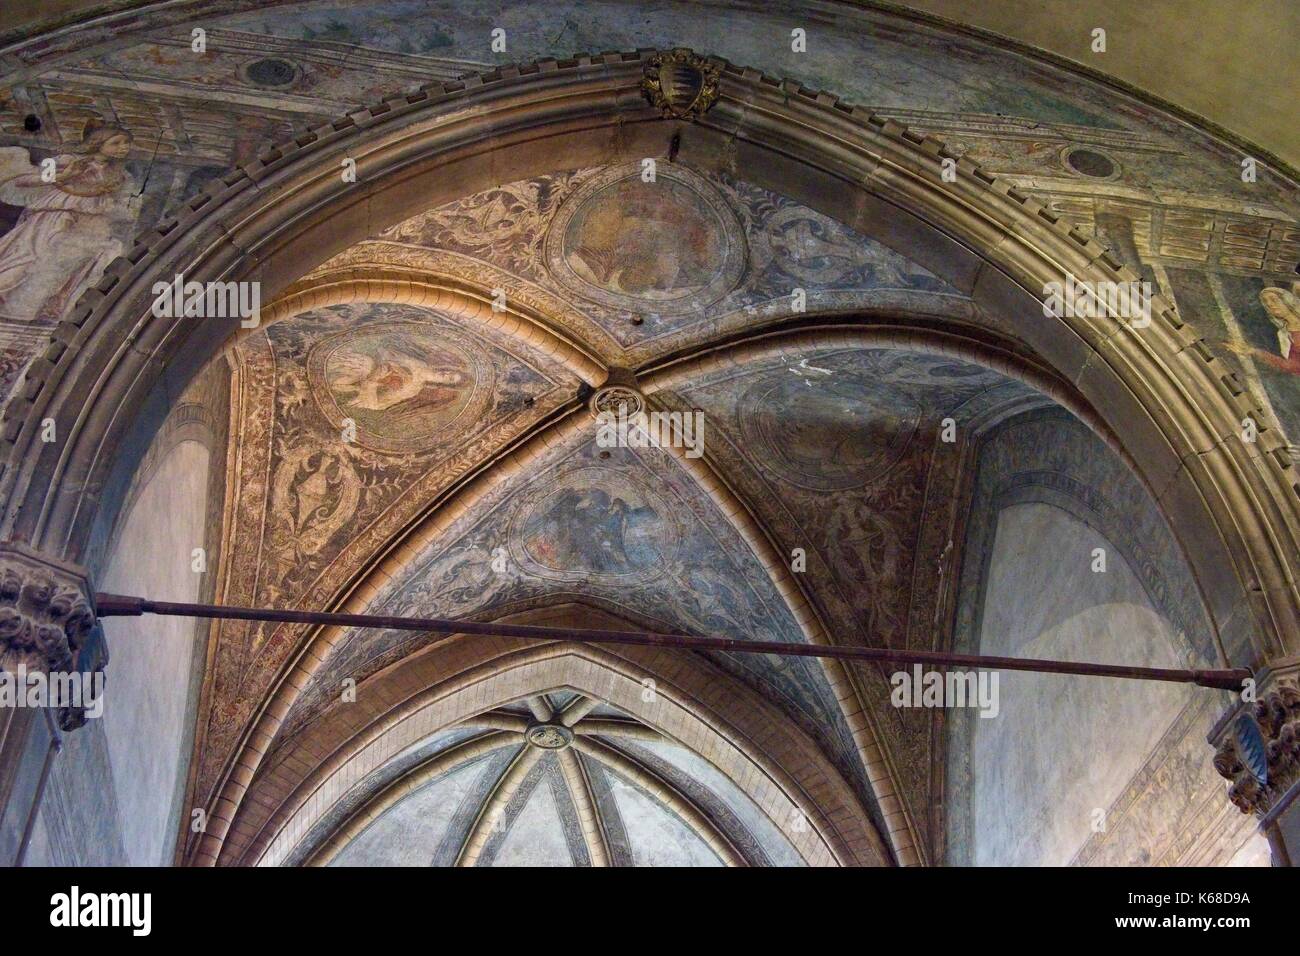 Venezia Veneto Italia. La Basilica di Santa Maria Gloriosa dei Frari, (I Frari) costruito 1250-1338. Soffitto interno. Foto Stock